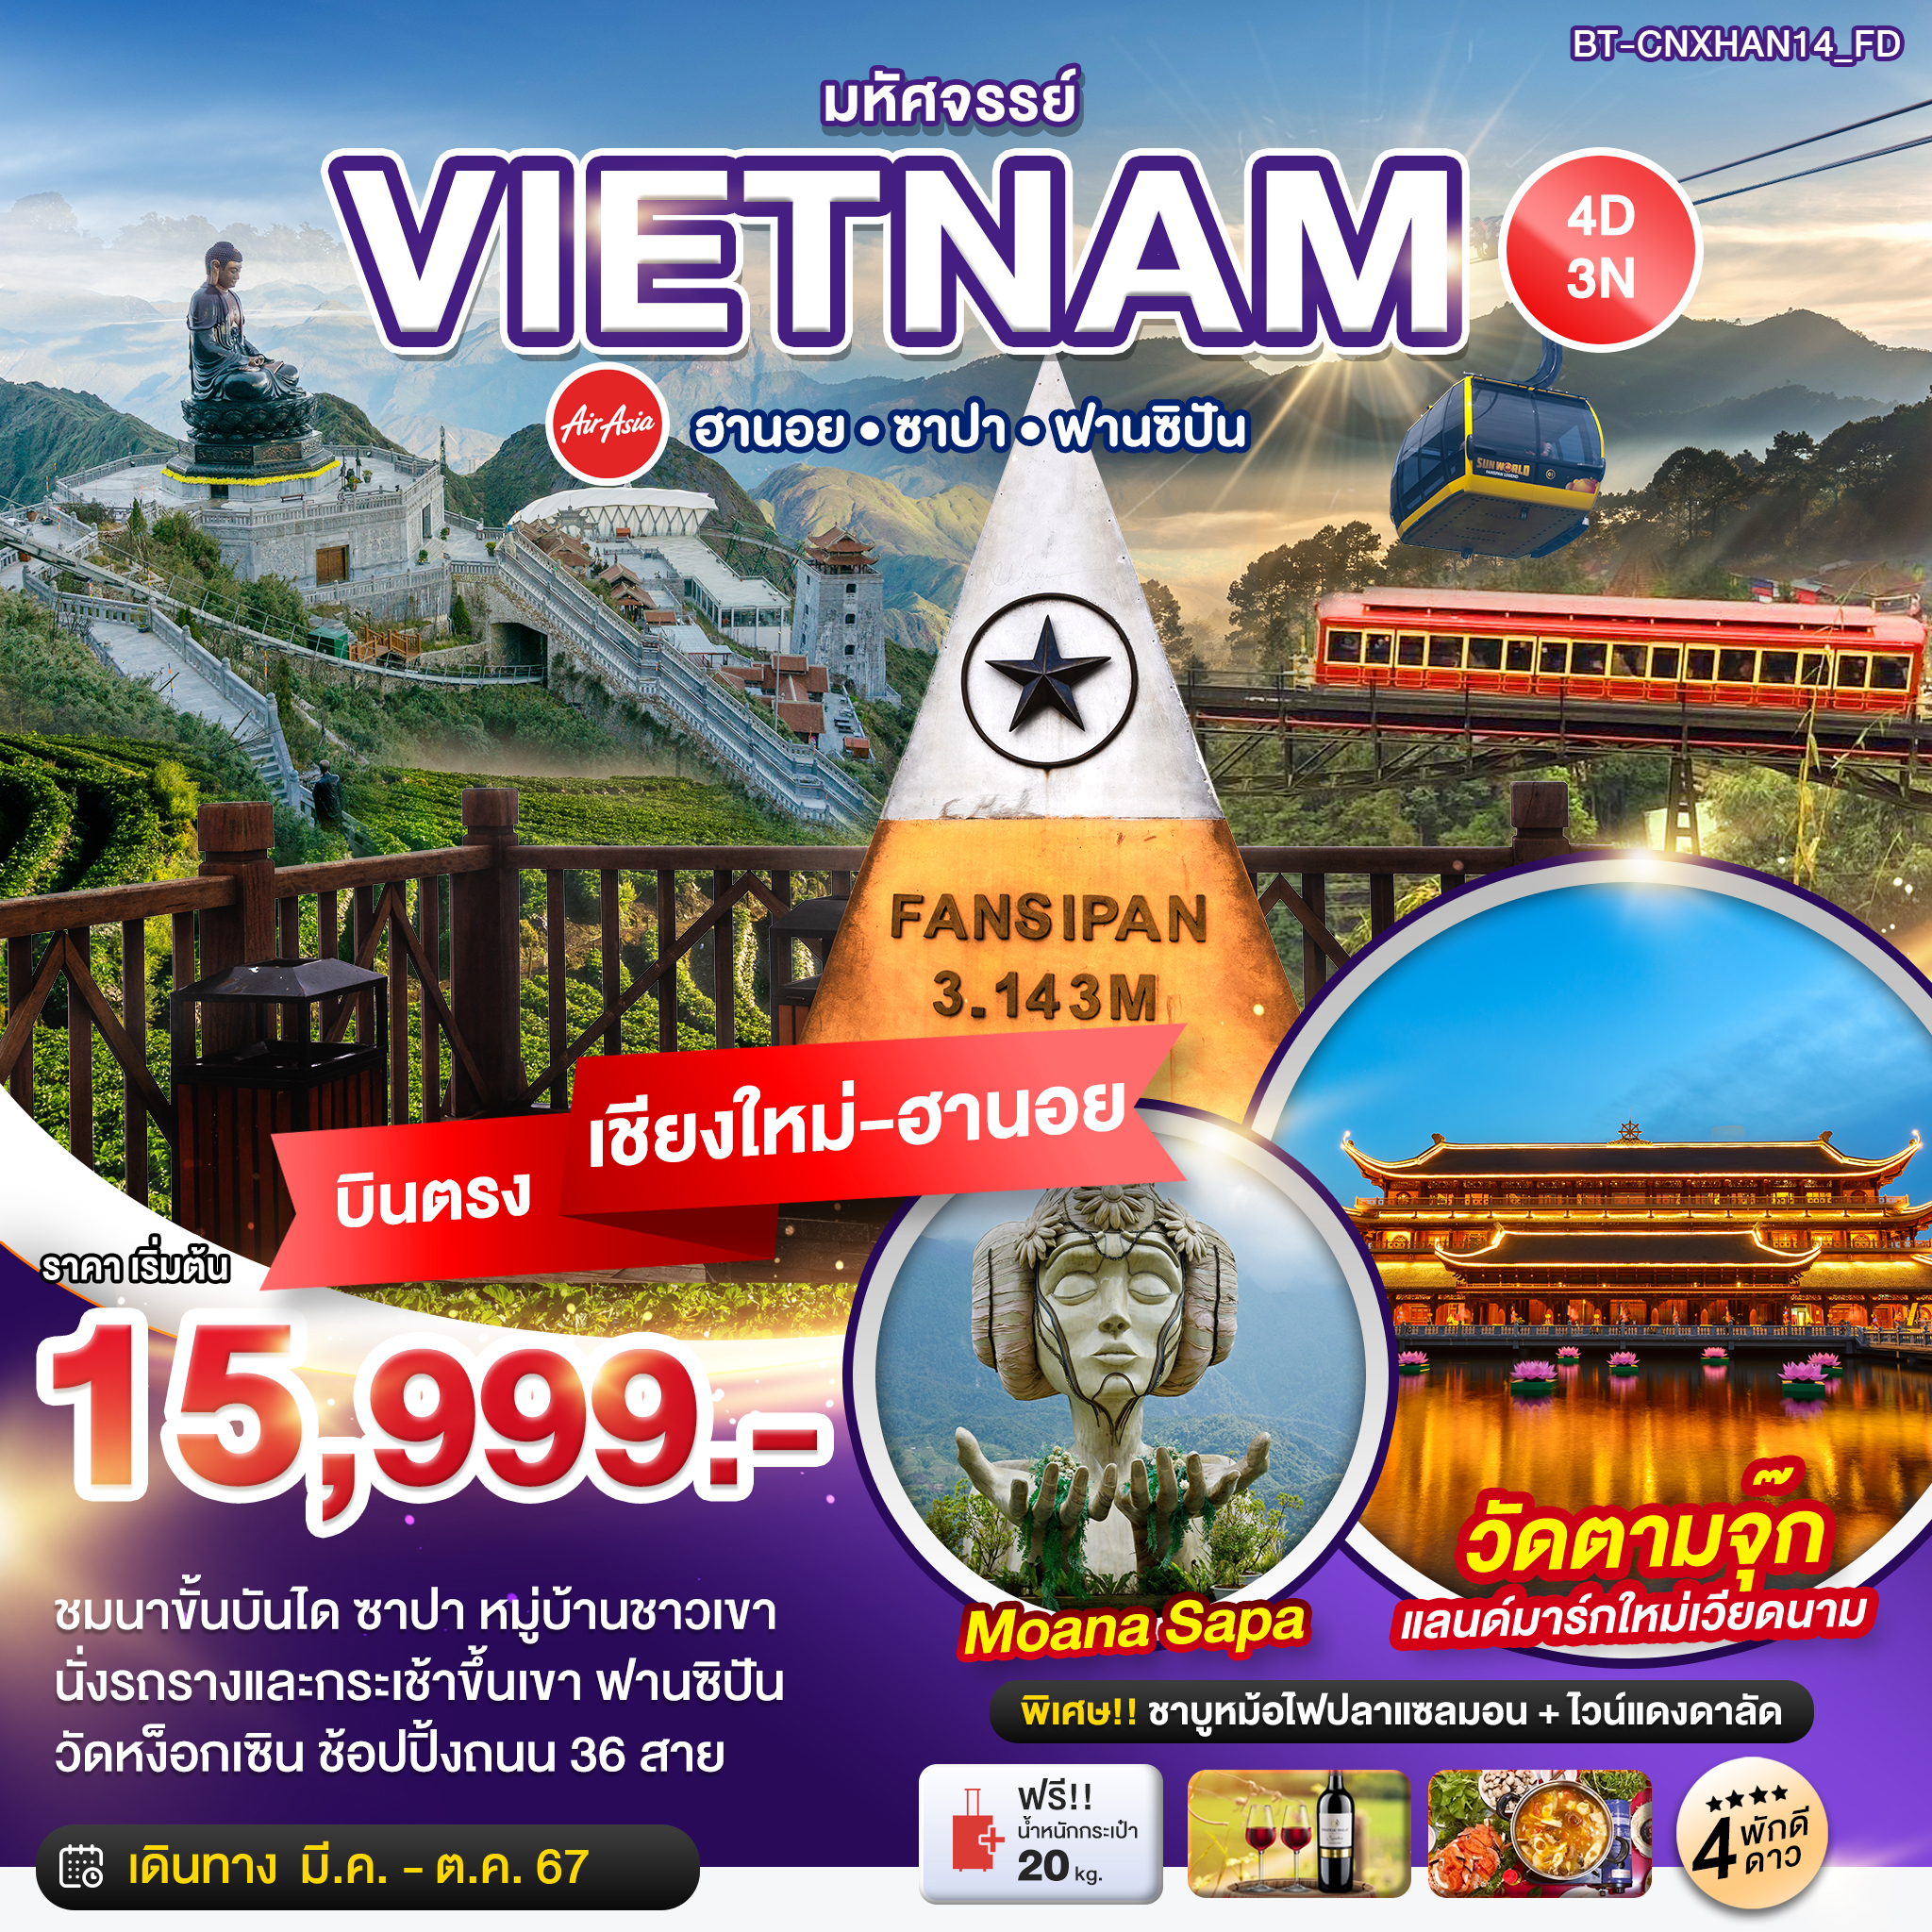 VIETNAM เวียดนามเหนือ ฮานอย ซาปา ฟานซิปัน (บินตรงเชียงใหม่-ฮานอย) 4 วัน 3 คืน เดินทาง มีนาคม - ตุลาคม 67 เริ่มต้น 15,999.- Air Asia (FD)